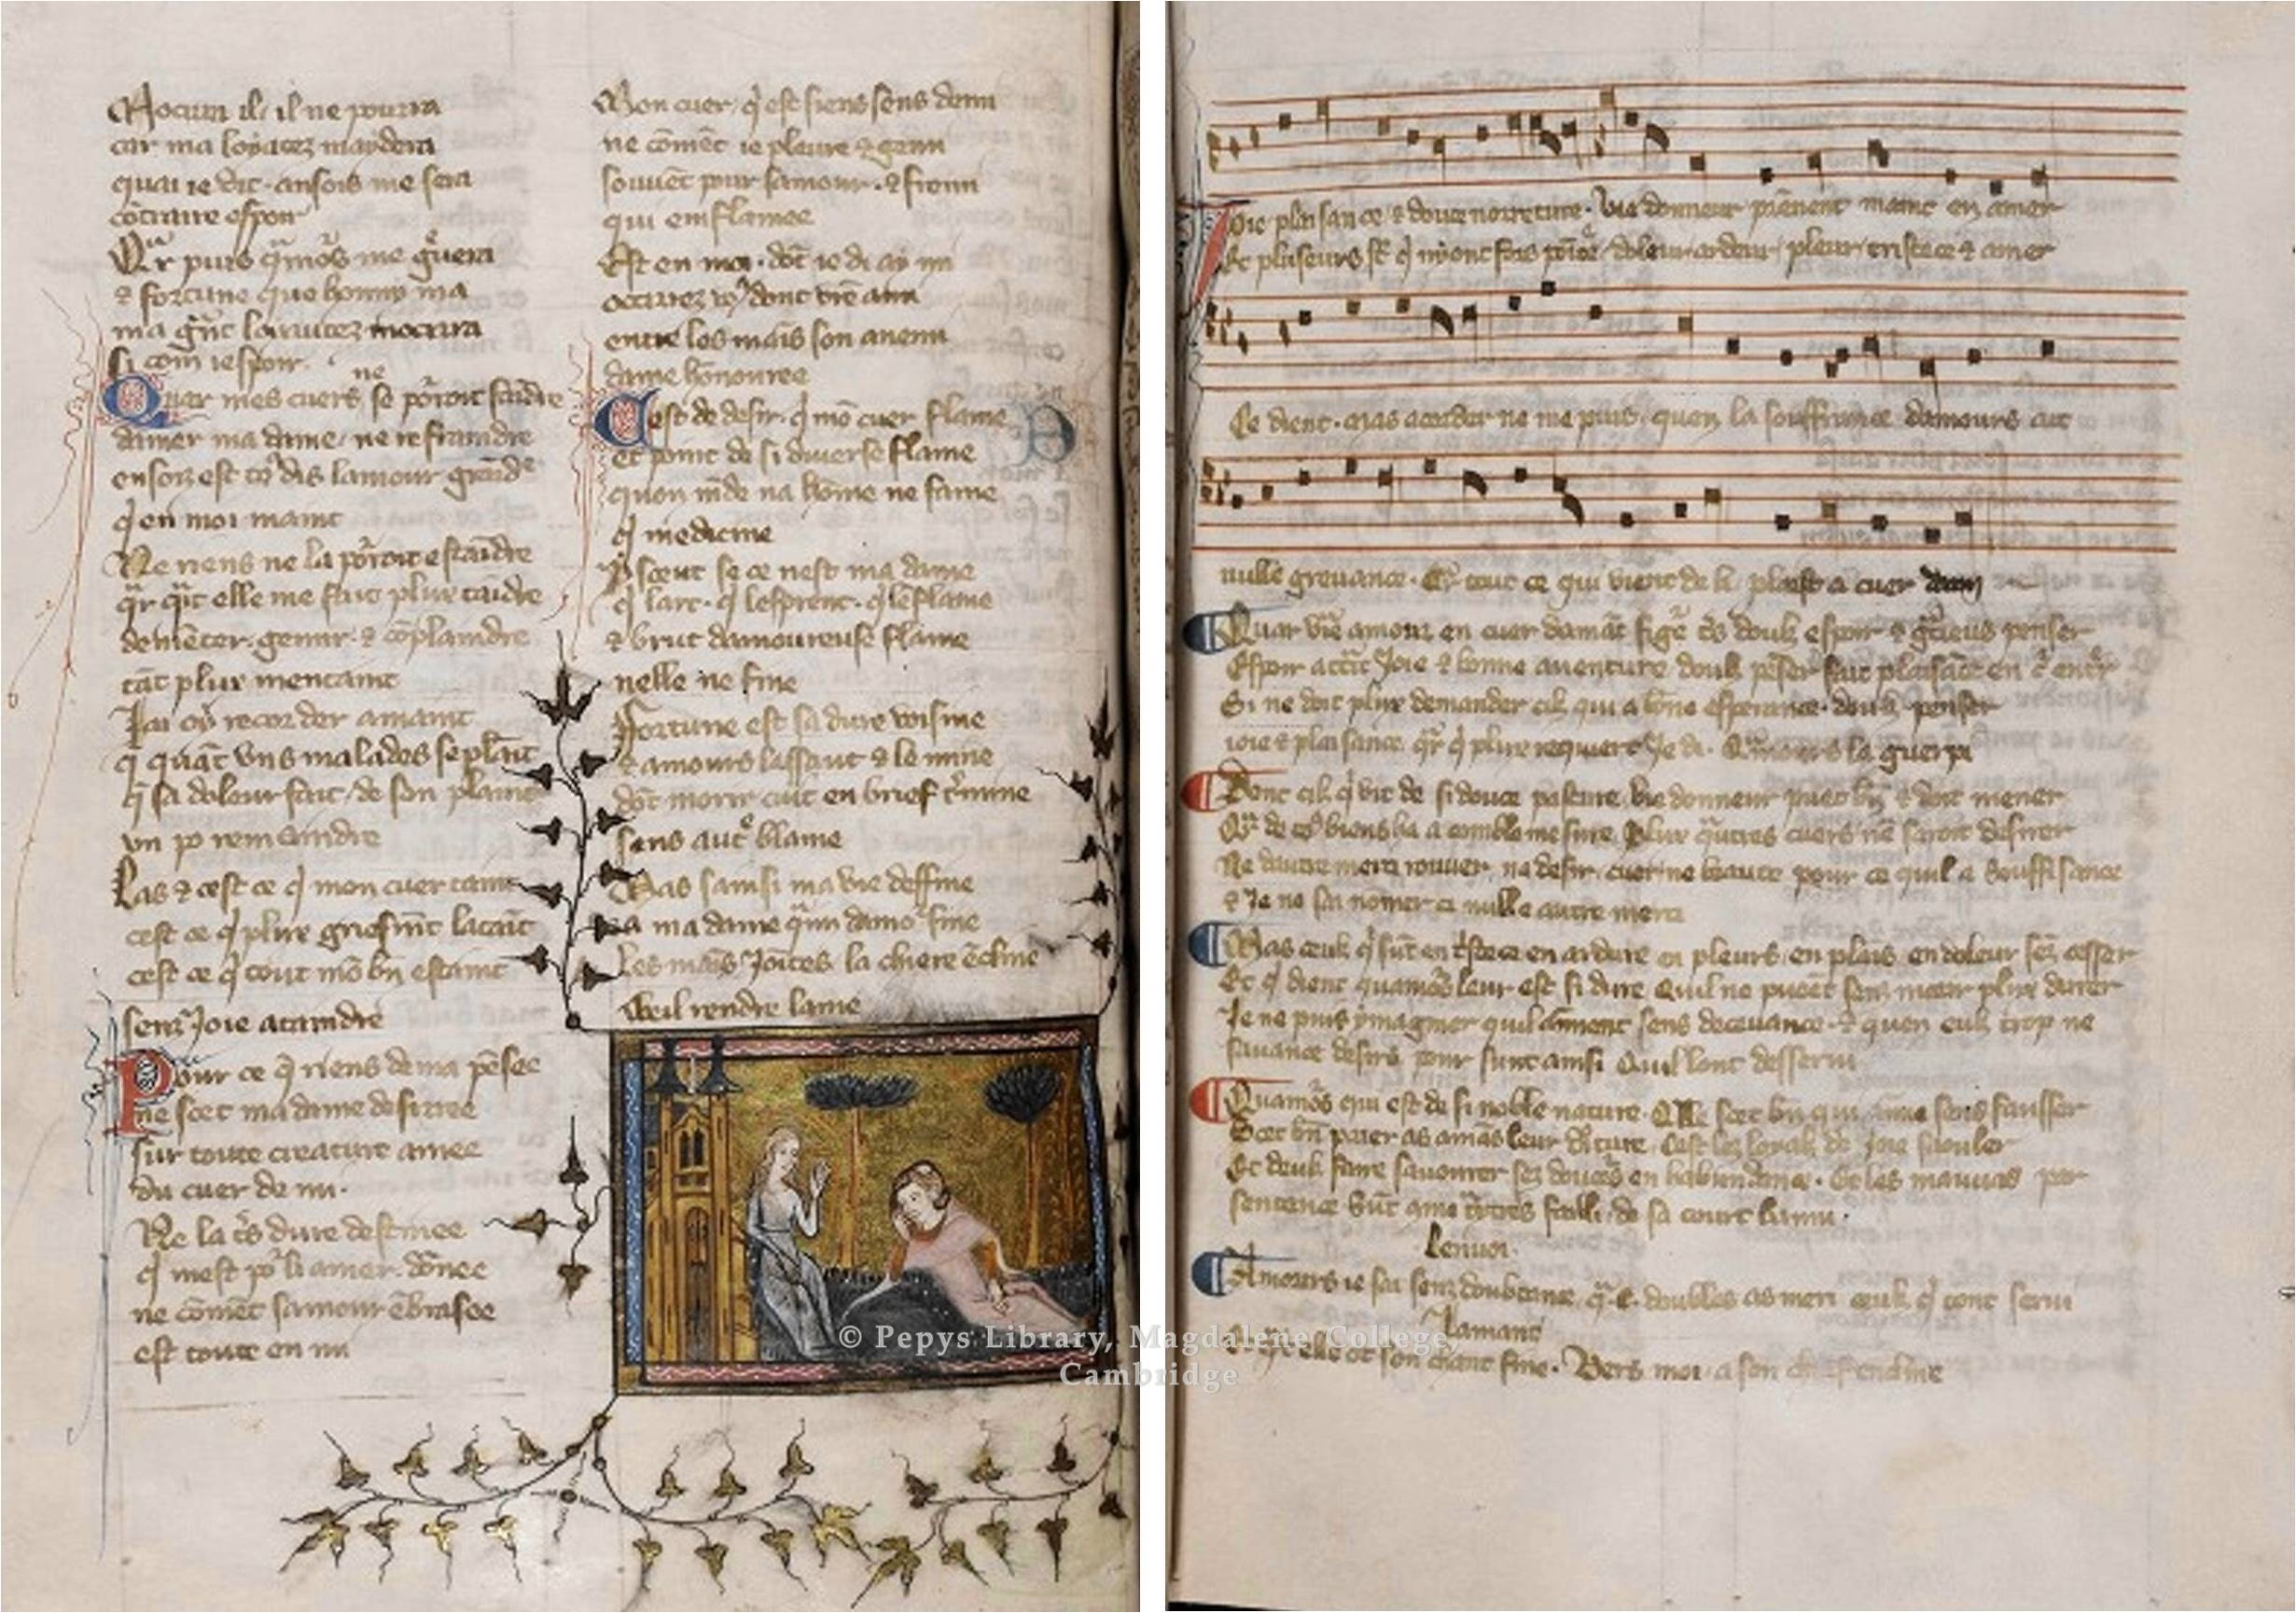 Item 6: Manuscript: Remède de Fortune, by Guillaume de Machaut, 15th century.